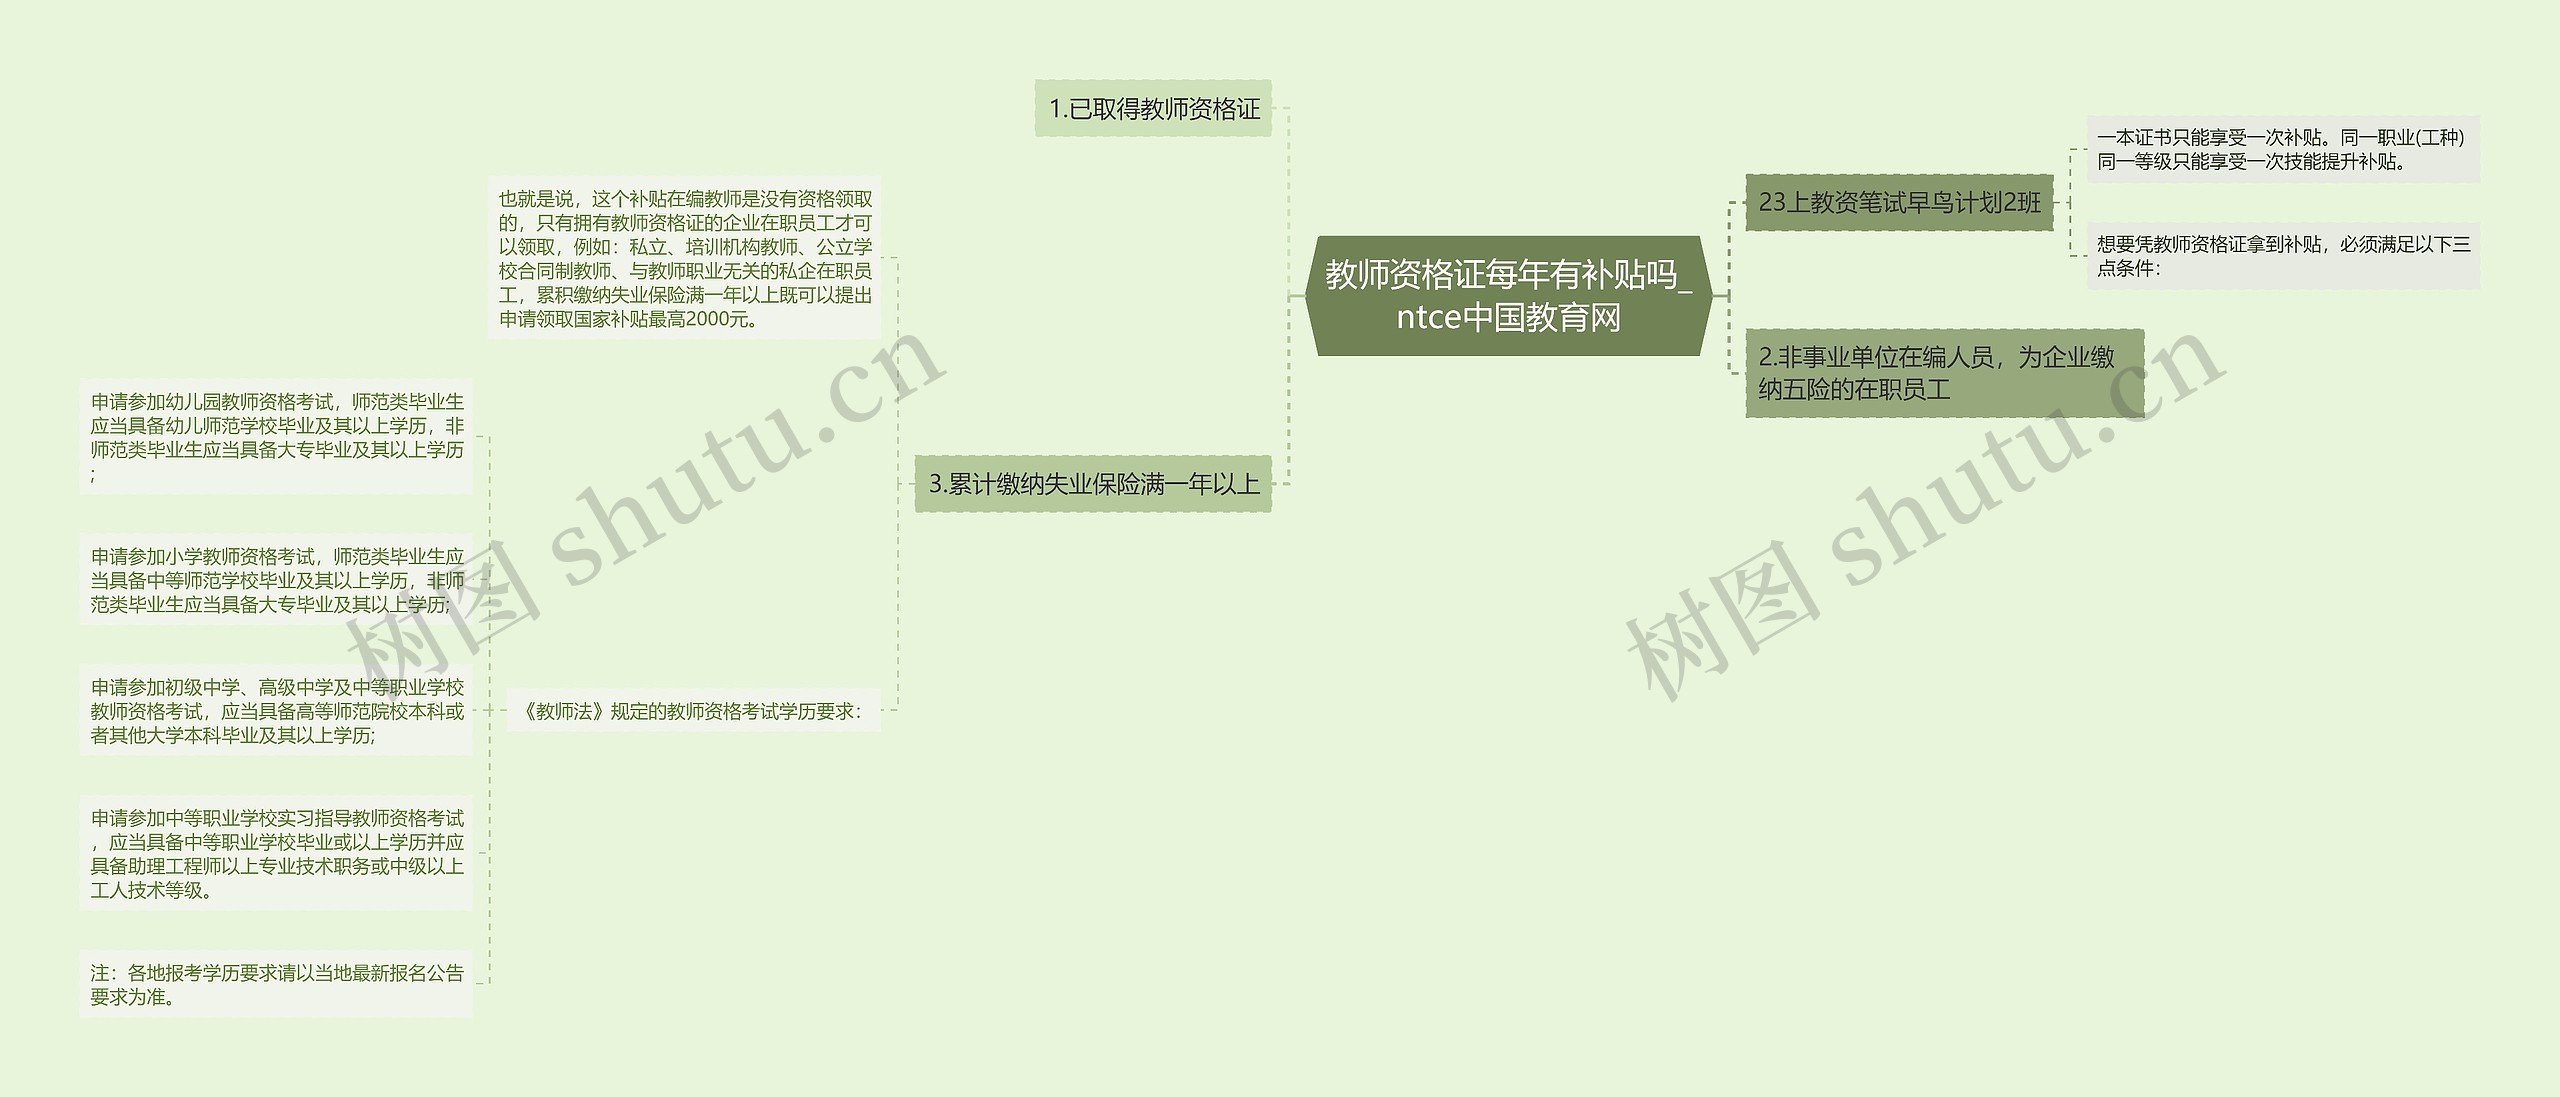 教师资格证每年有补贴吗_ntce中国教育网思维导图